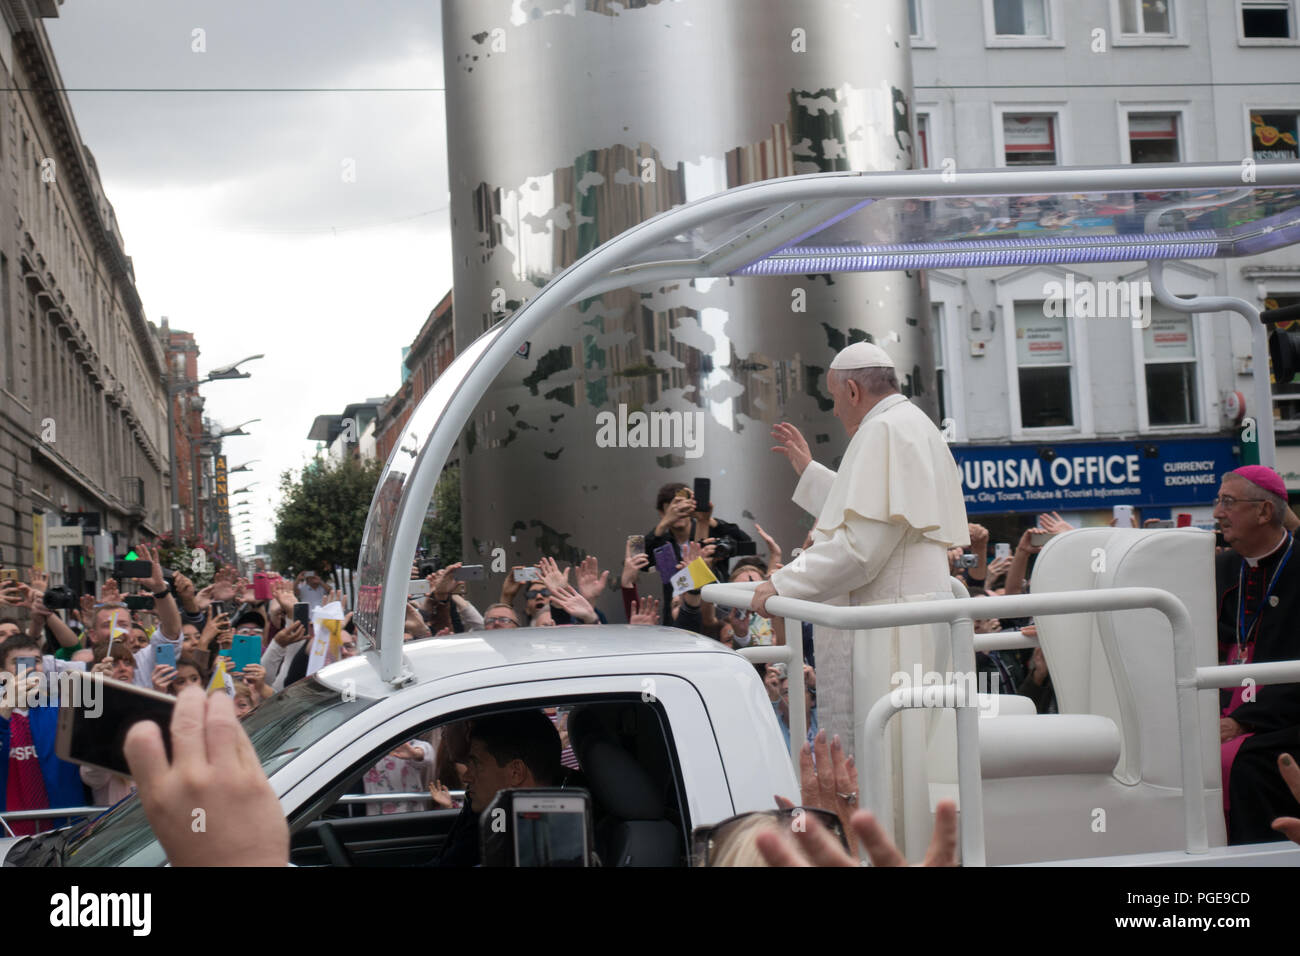 Le pape François à Dublin - Irlande Banque D'Images